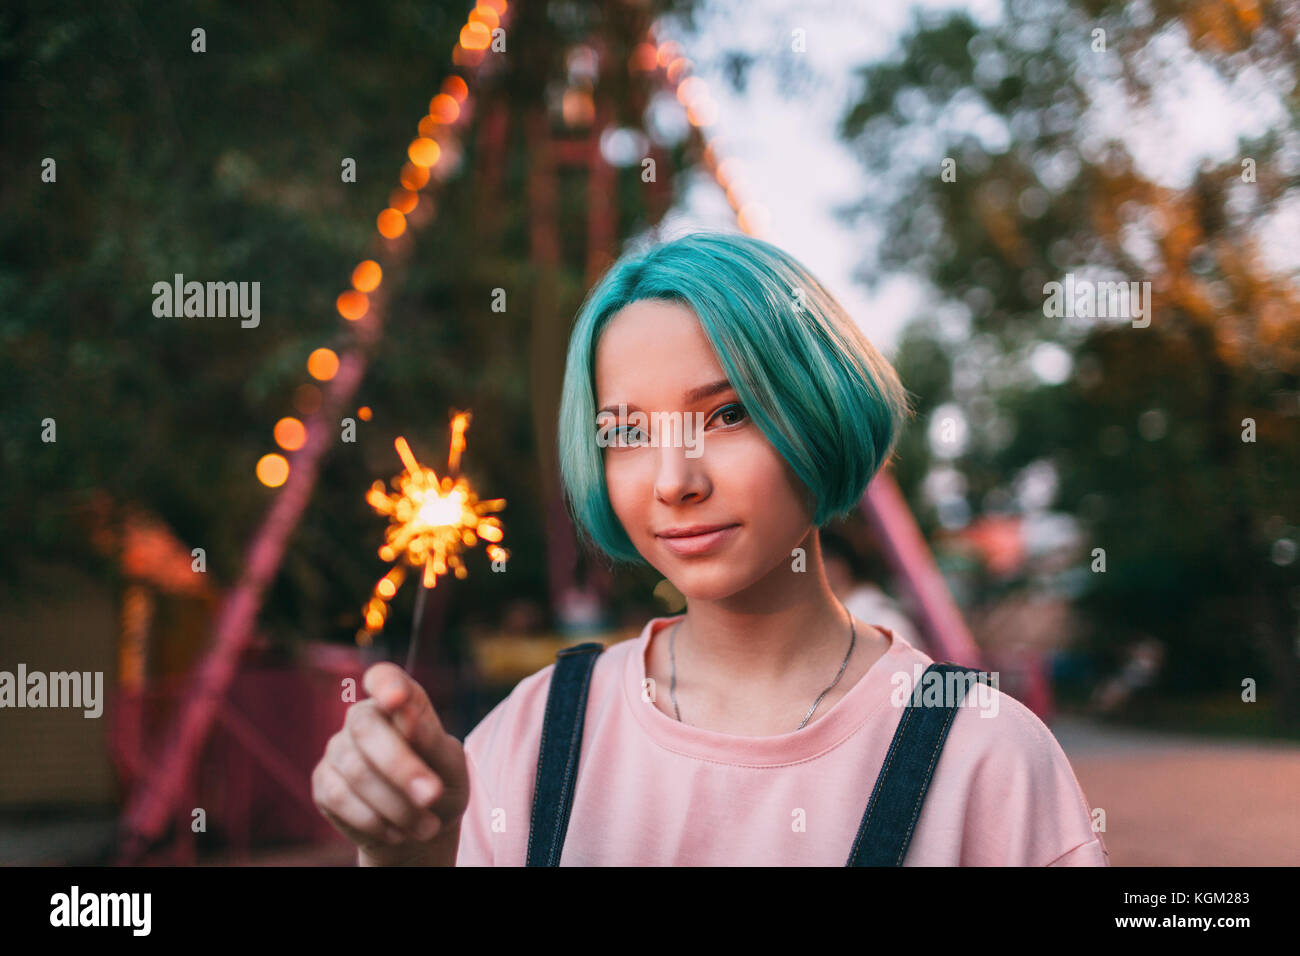 Portrait of teenage girl holding illuminated sparkler Stock Photo